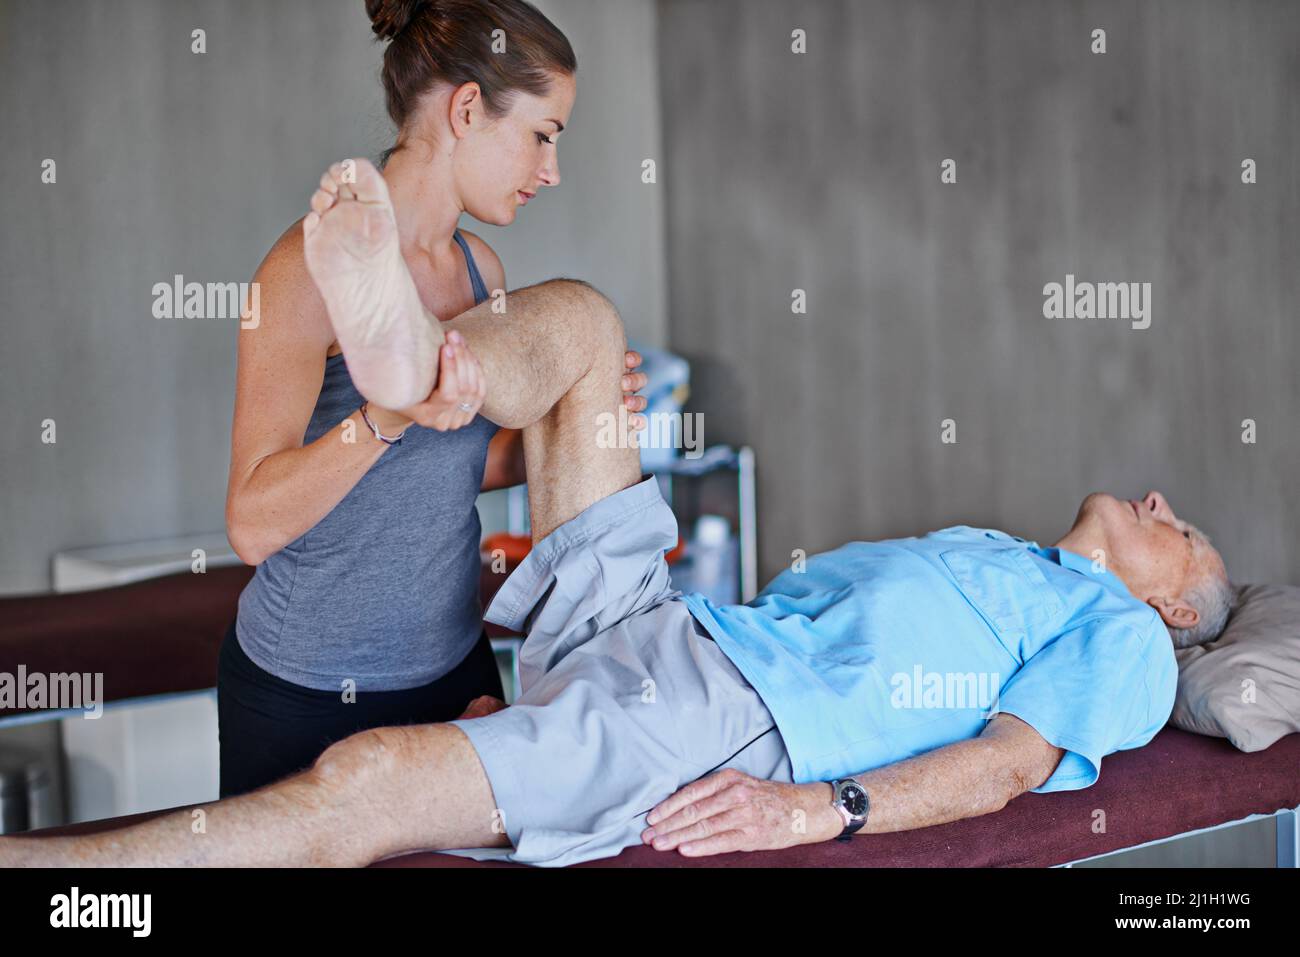 Versuchen Sie, diese Position so lange wie möglich zu halten. Aufnahme eines älteren Mannes, der eine Physiotherapie-Sitzung hatte. Stockfoto